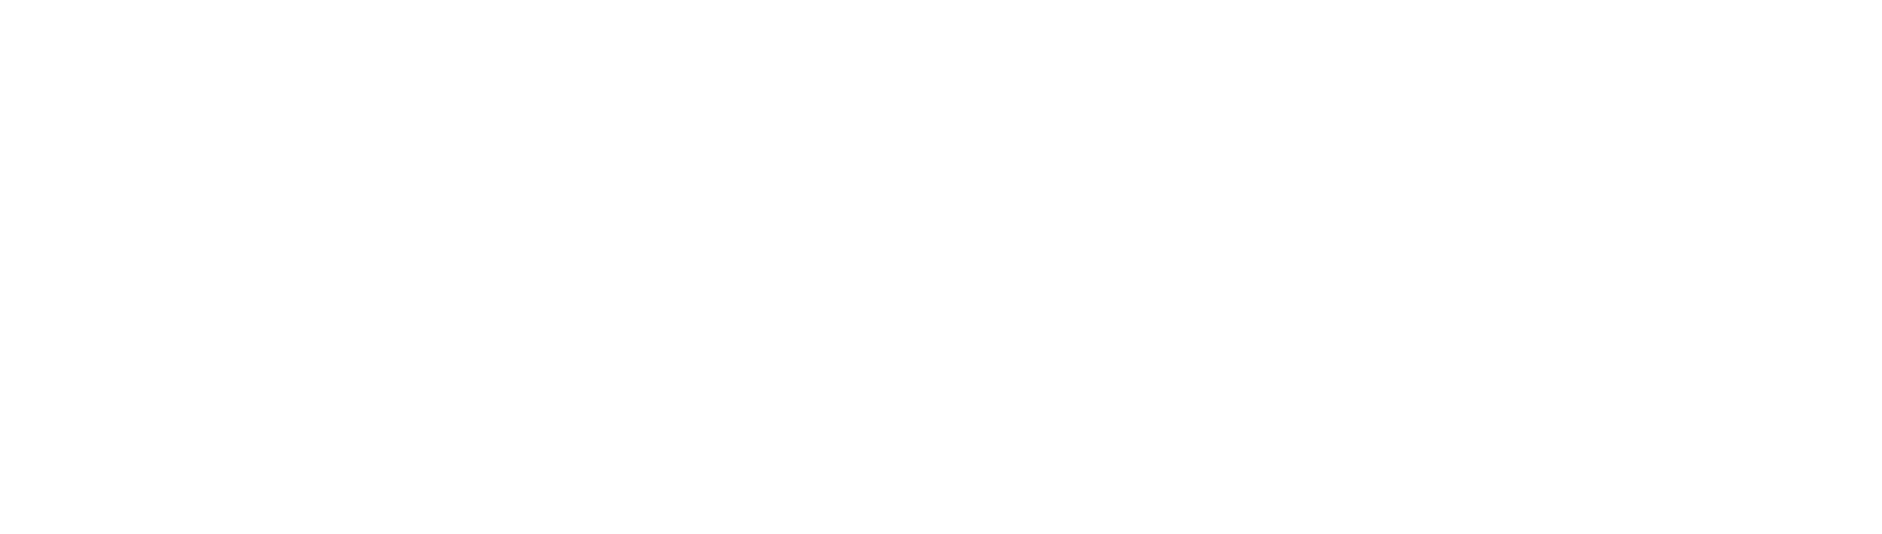 verity full logo white